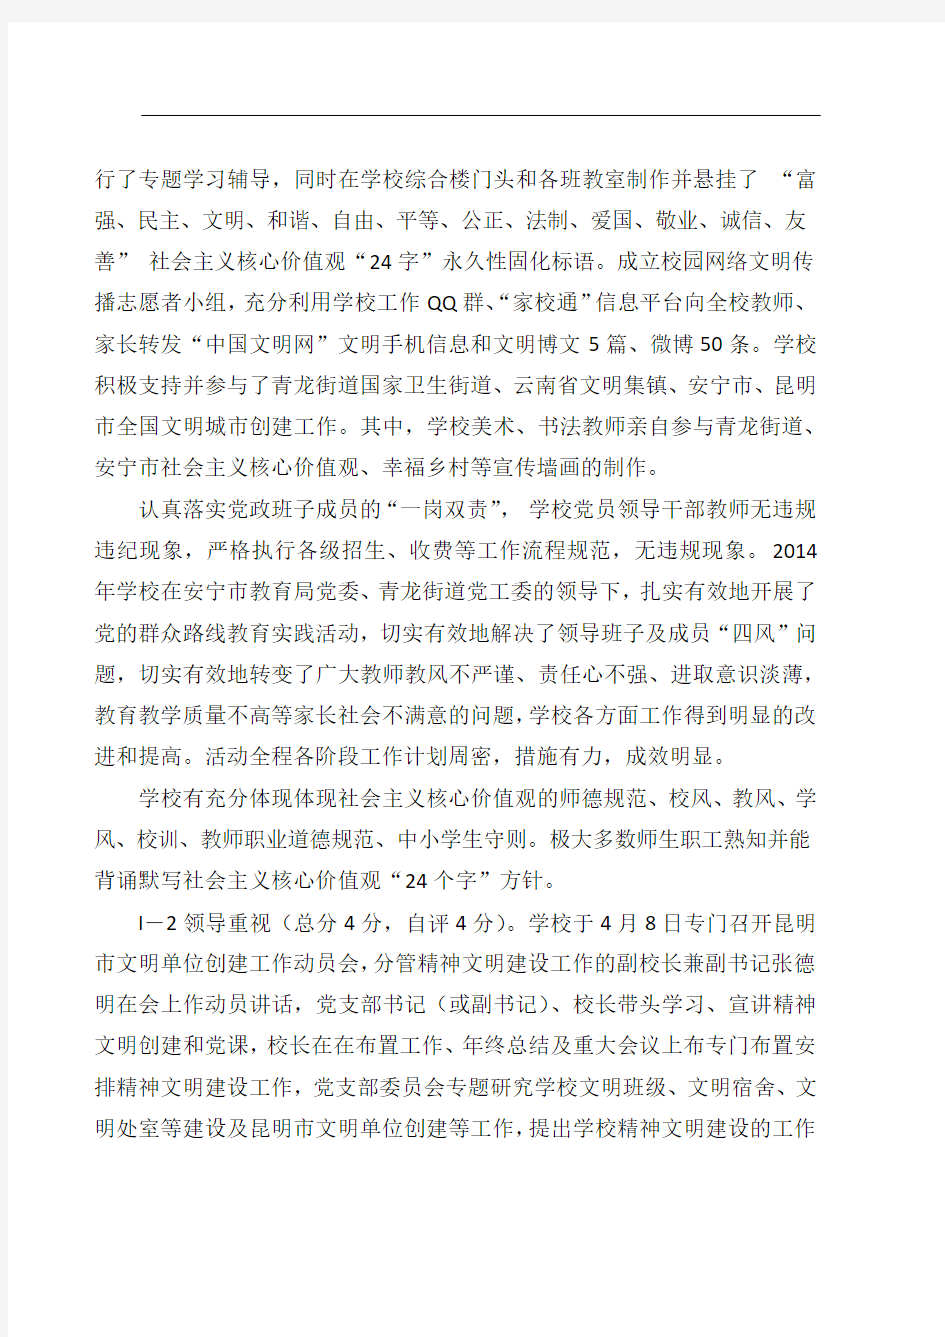 安宁市青龙学校关于创建昆明市文明单位的报告(修改)